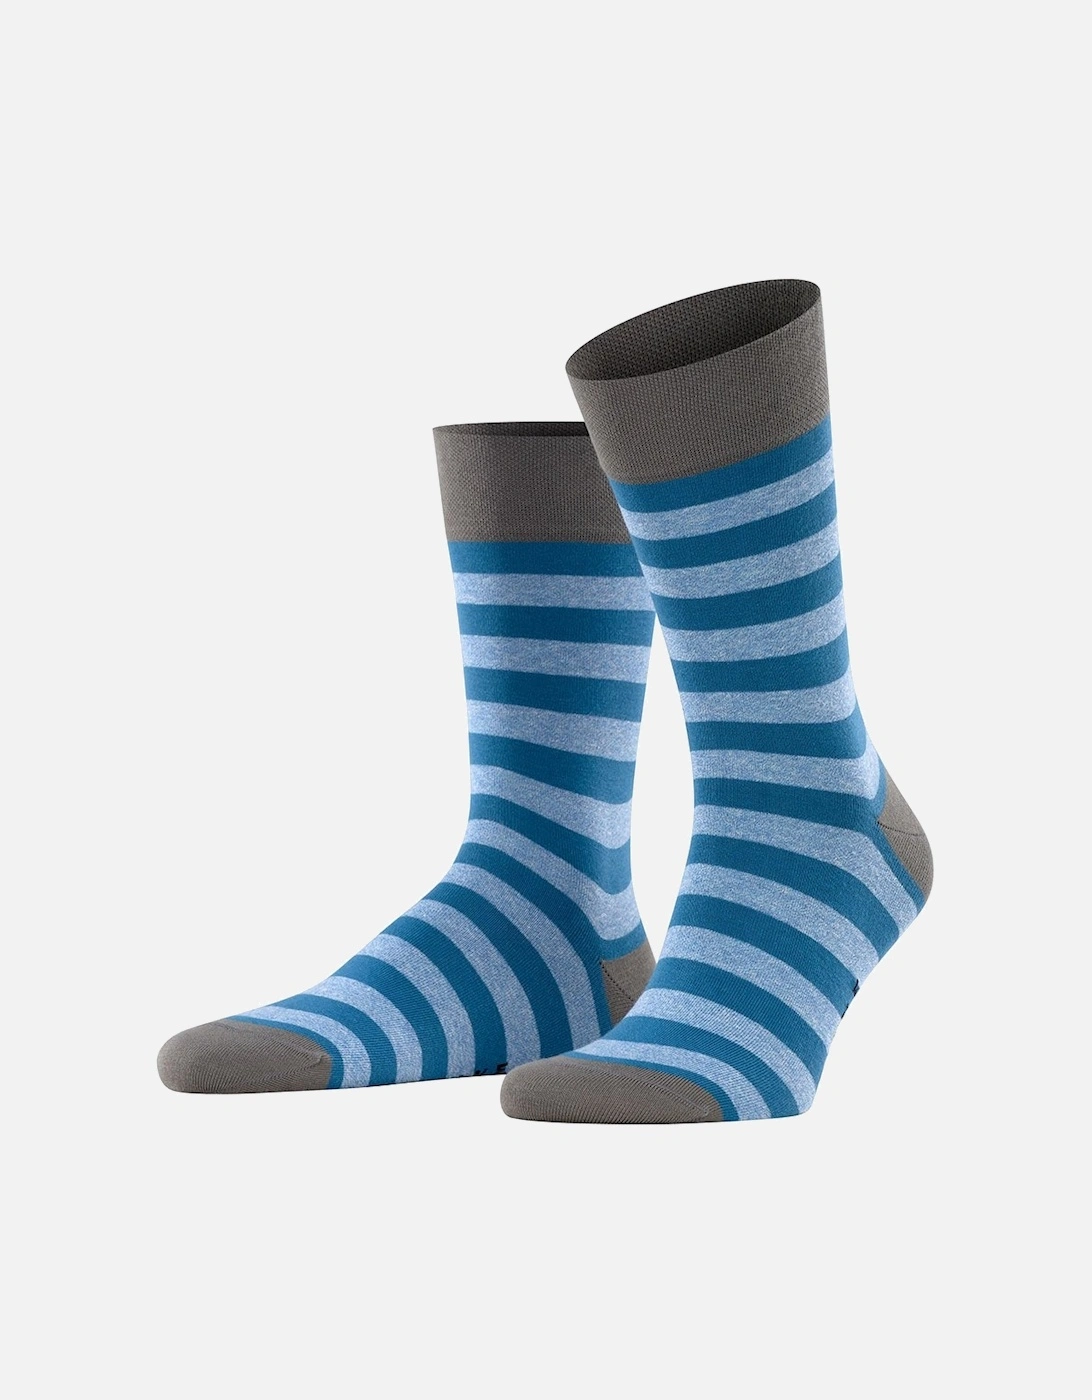 Sensitive Mapped Men's Socks, 2 of 1